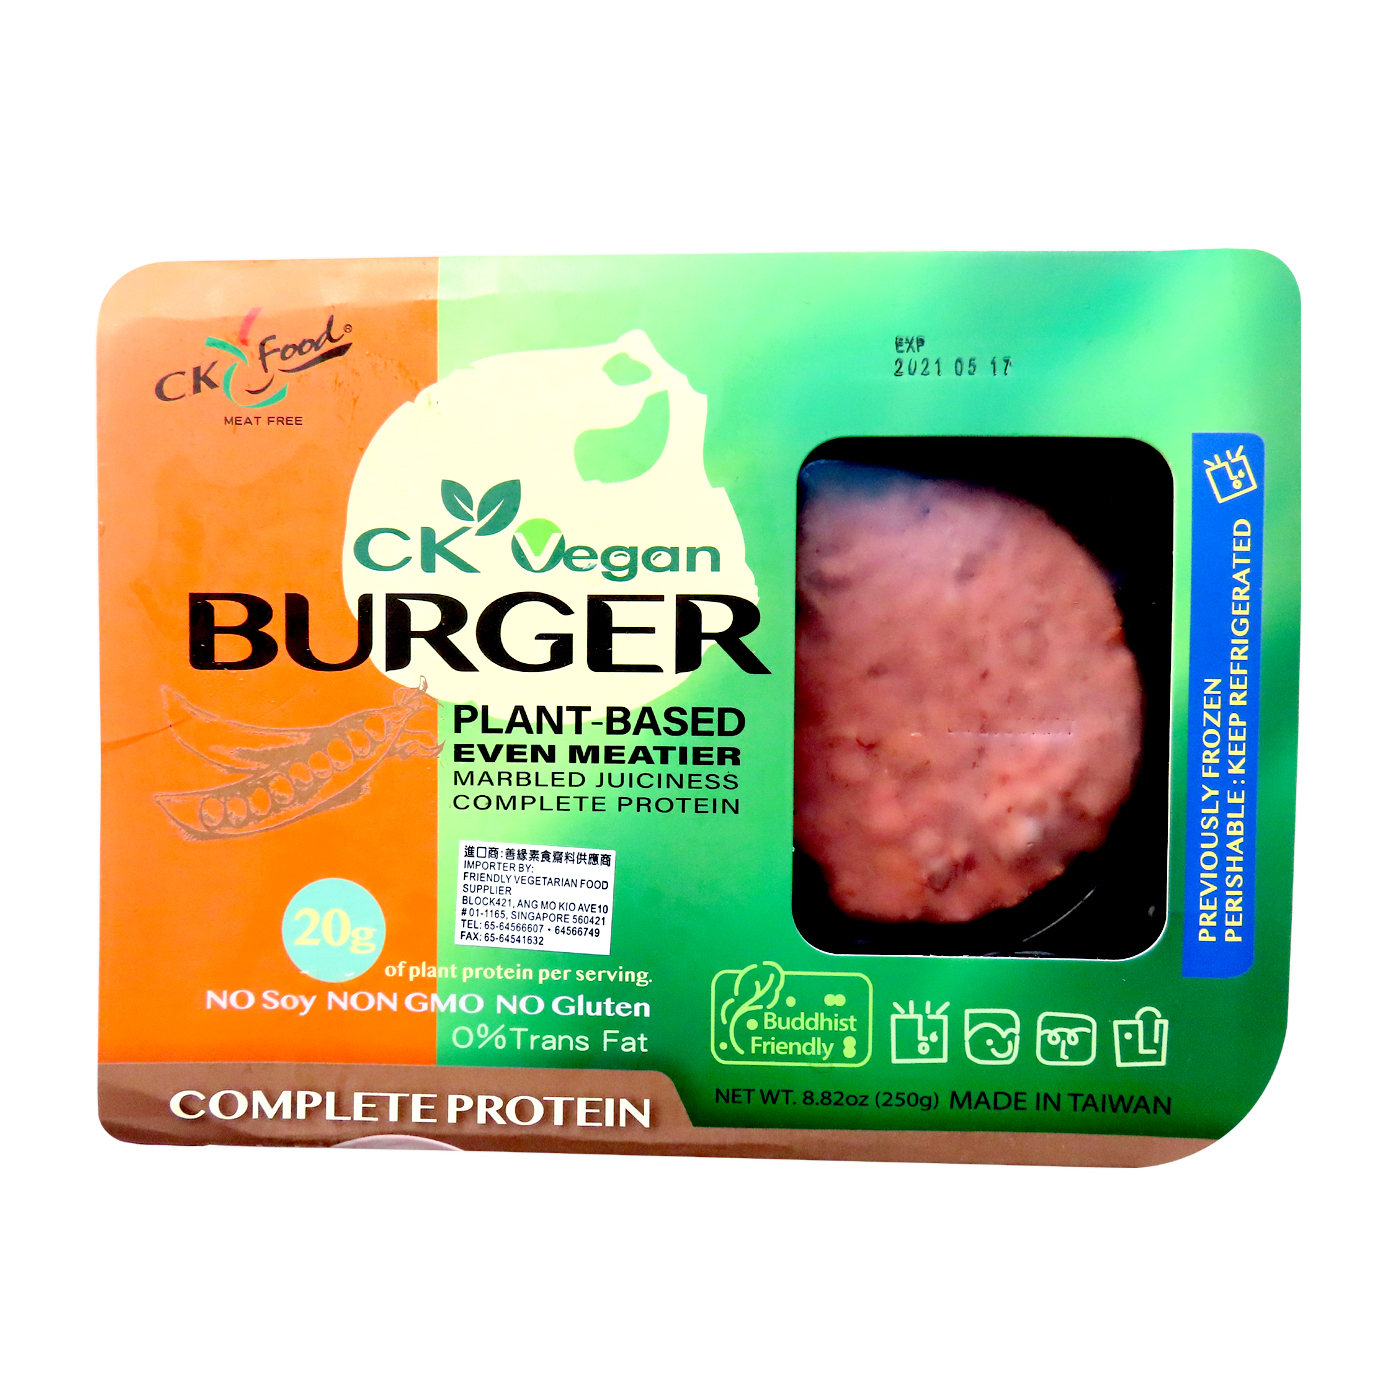 Image CK Vegan Burger 全广 - 纯素汉堡肉 250grams